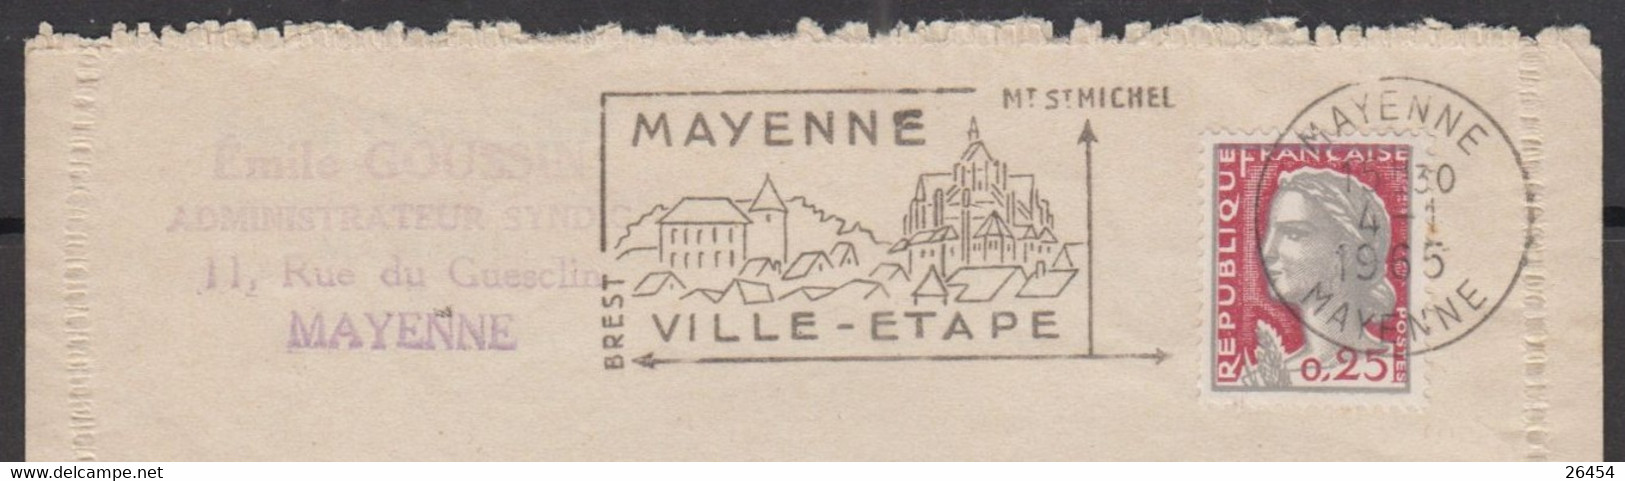 Mne De Decaris 25c  Sur  Courrier " Ouverture De LIQUIDATION "  De 53 MAYENNE  Le 4 1 1965  Pour 35 FOUGERES - 1960 Maríanne De Decaris